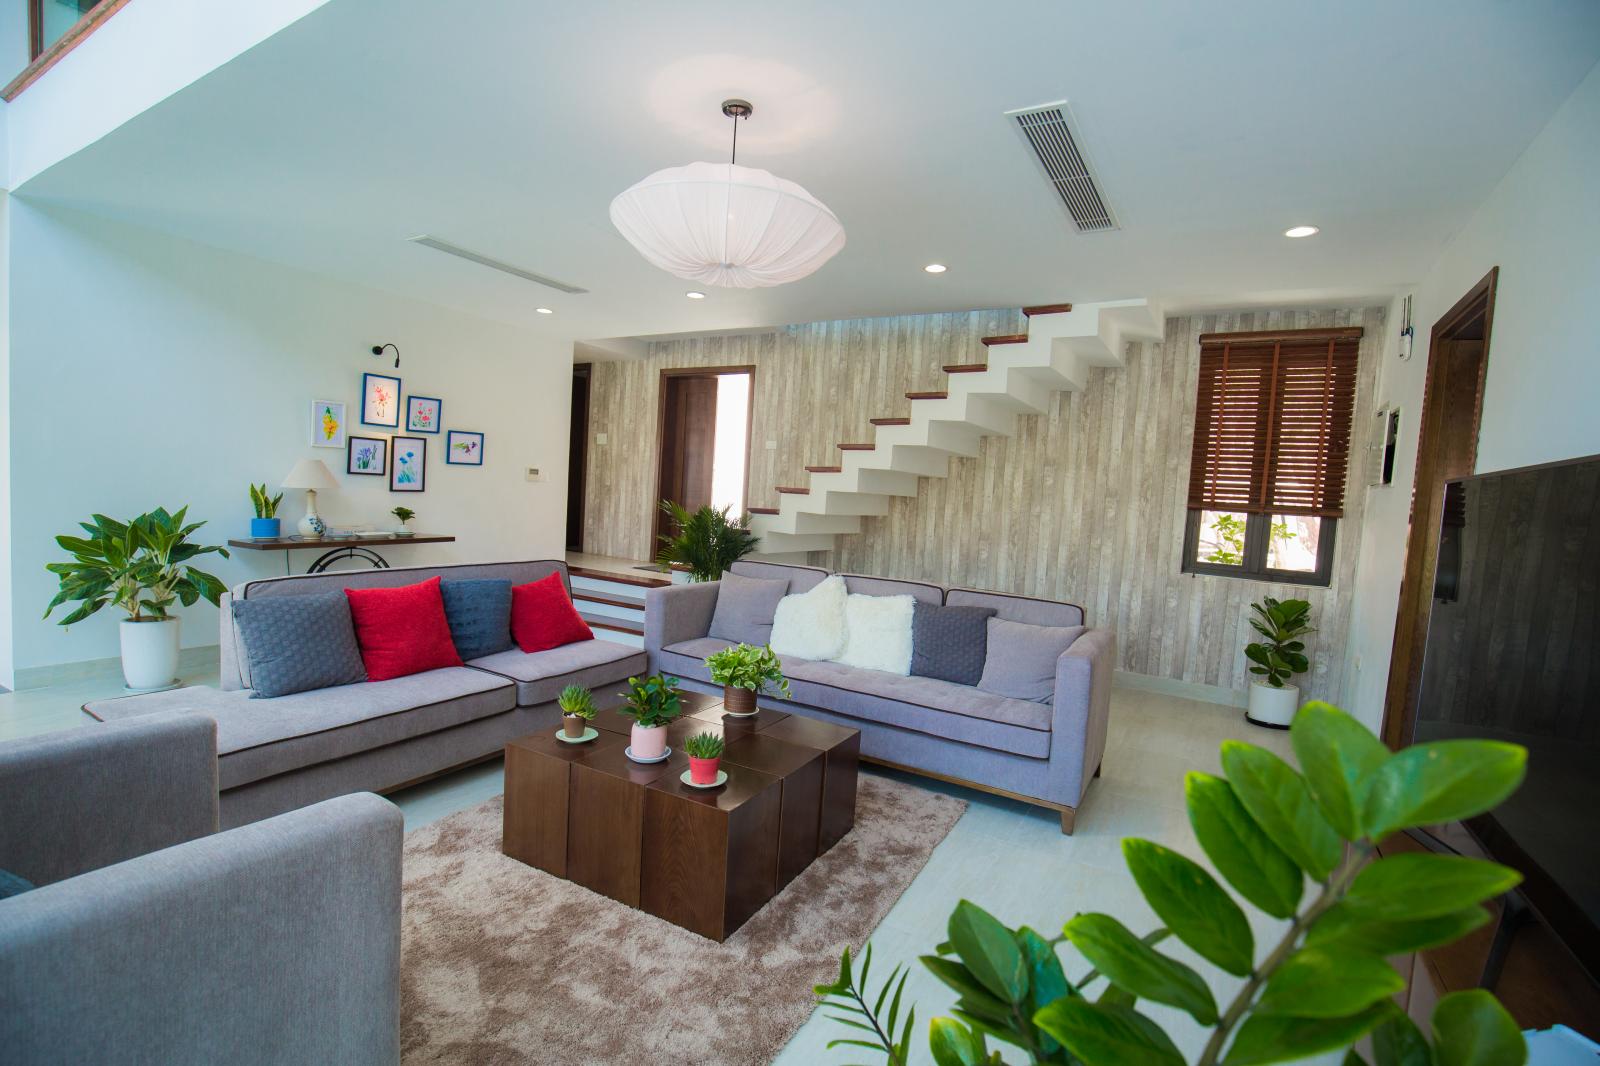 bất động sản nghỉ dưỡng sân golf với căn hộ có phòng khách rộng, bộ bàn ghế và cầu thang